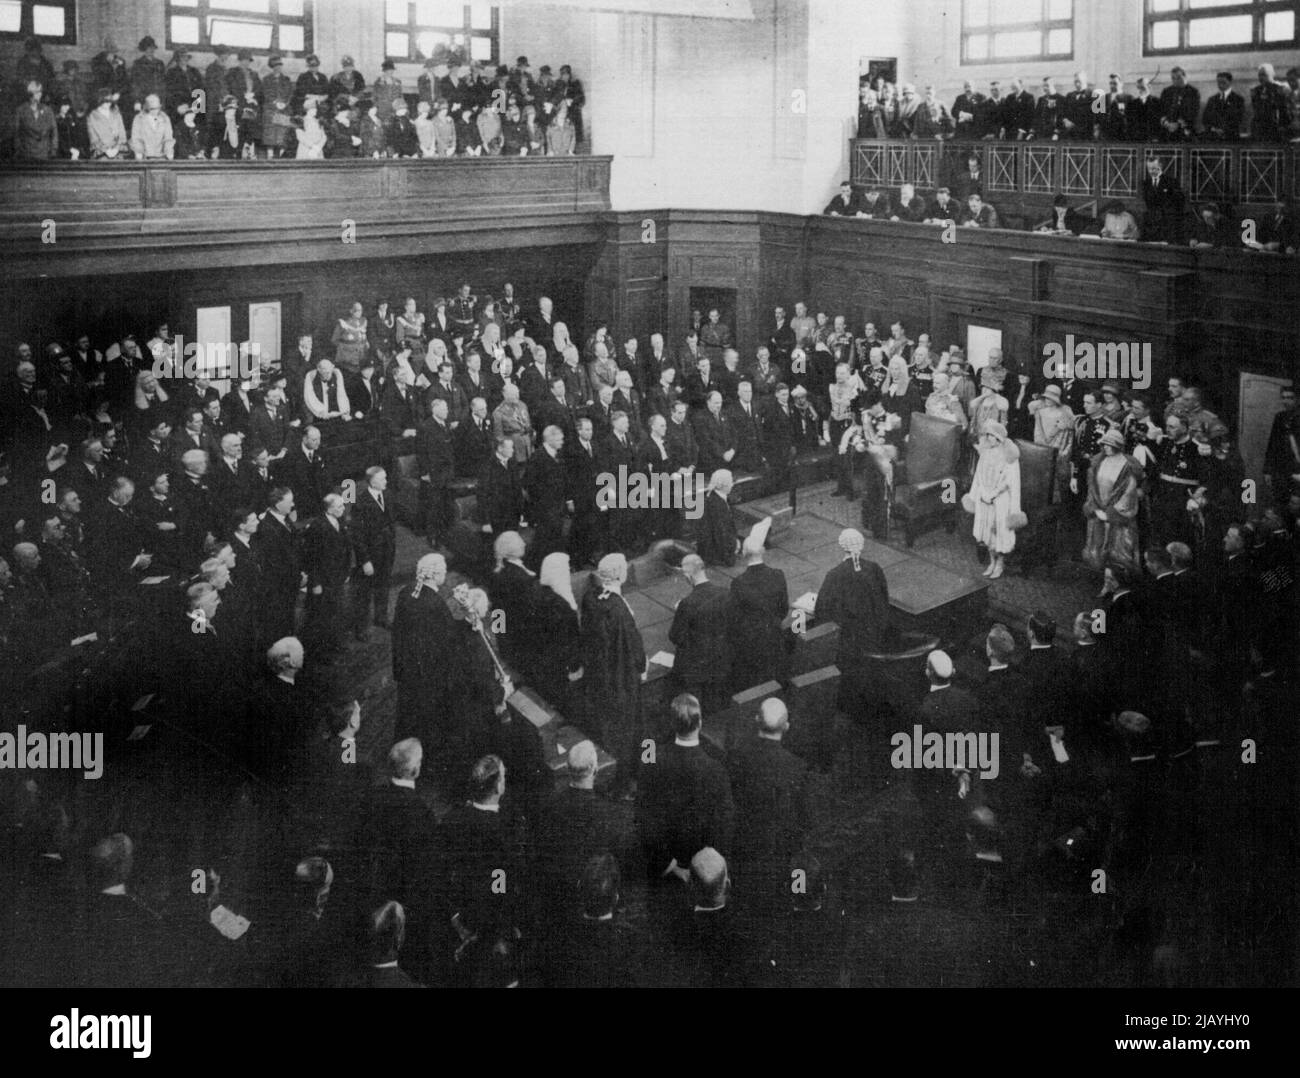 Eröffnung des Bundesparlaments in Canberra durch S.R.H. Duke of York (verstorbener König George VI.) im Mai 1927. 10. Februar 1954. (Foto von einem offiziellen australischen Foto). Stockfoto